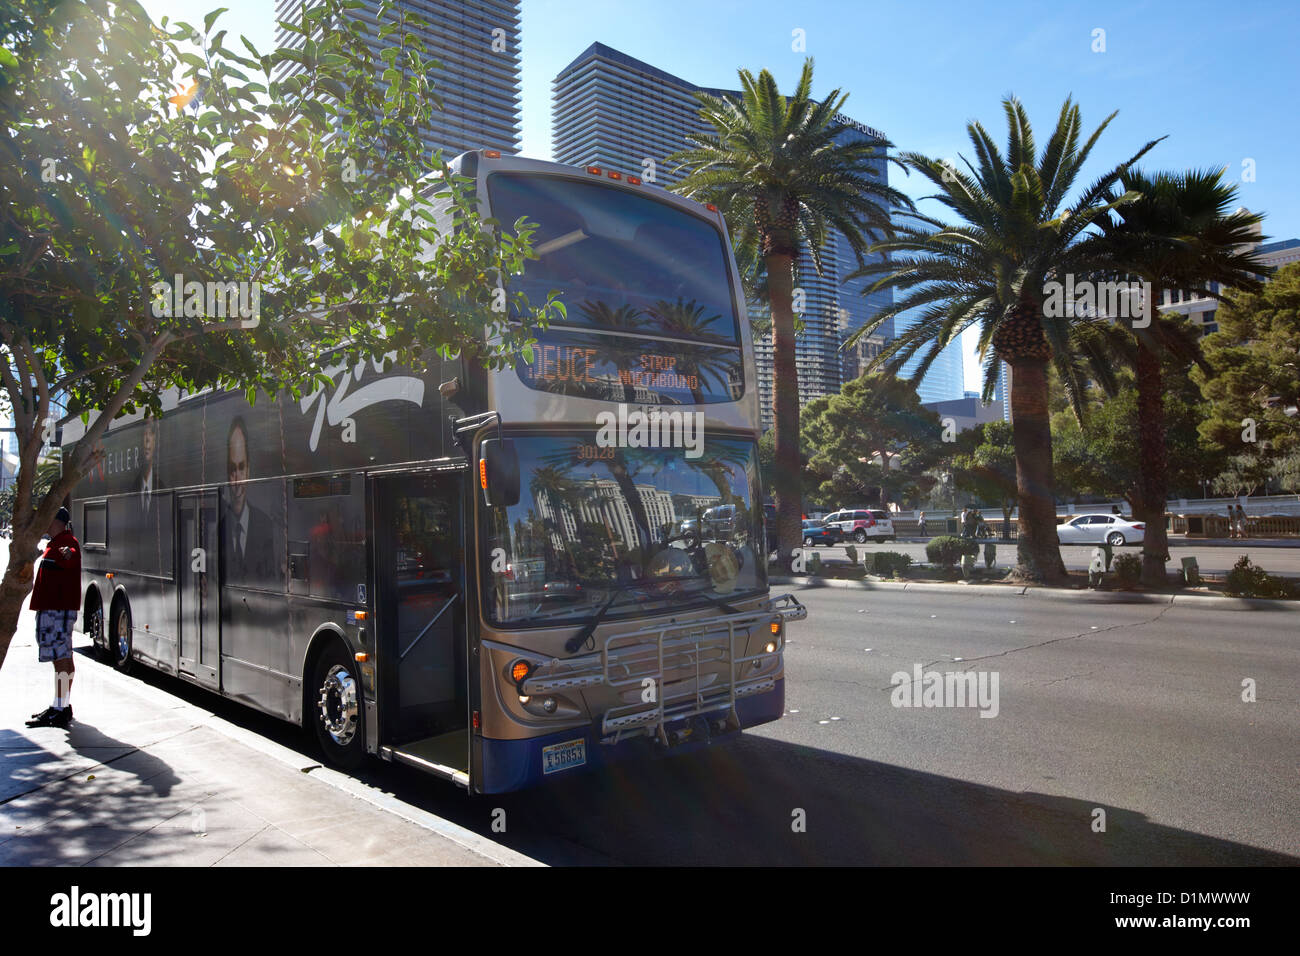 La deuce double deck bus sur le Strip de Las Vegas NEVADA USA Banque D'Images